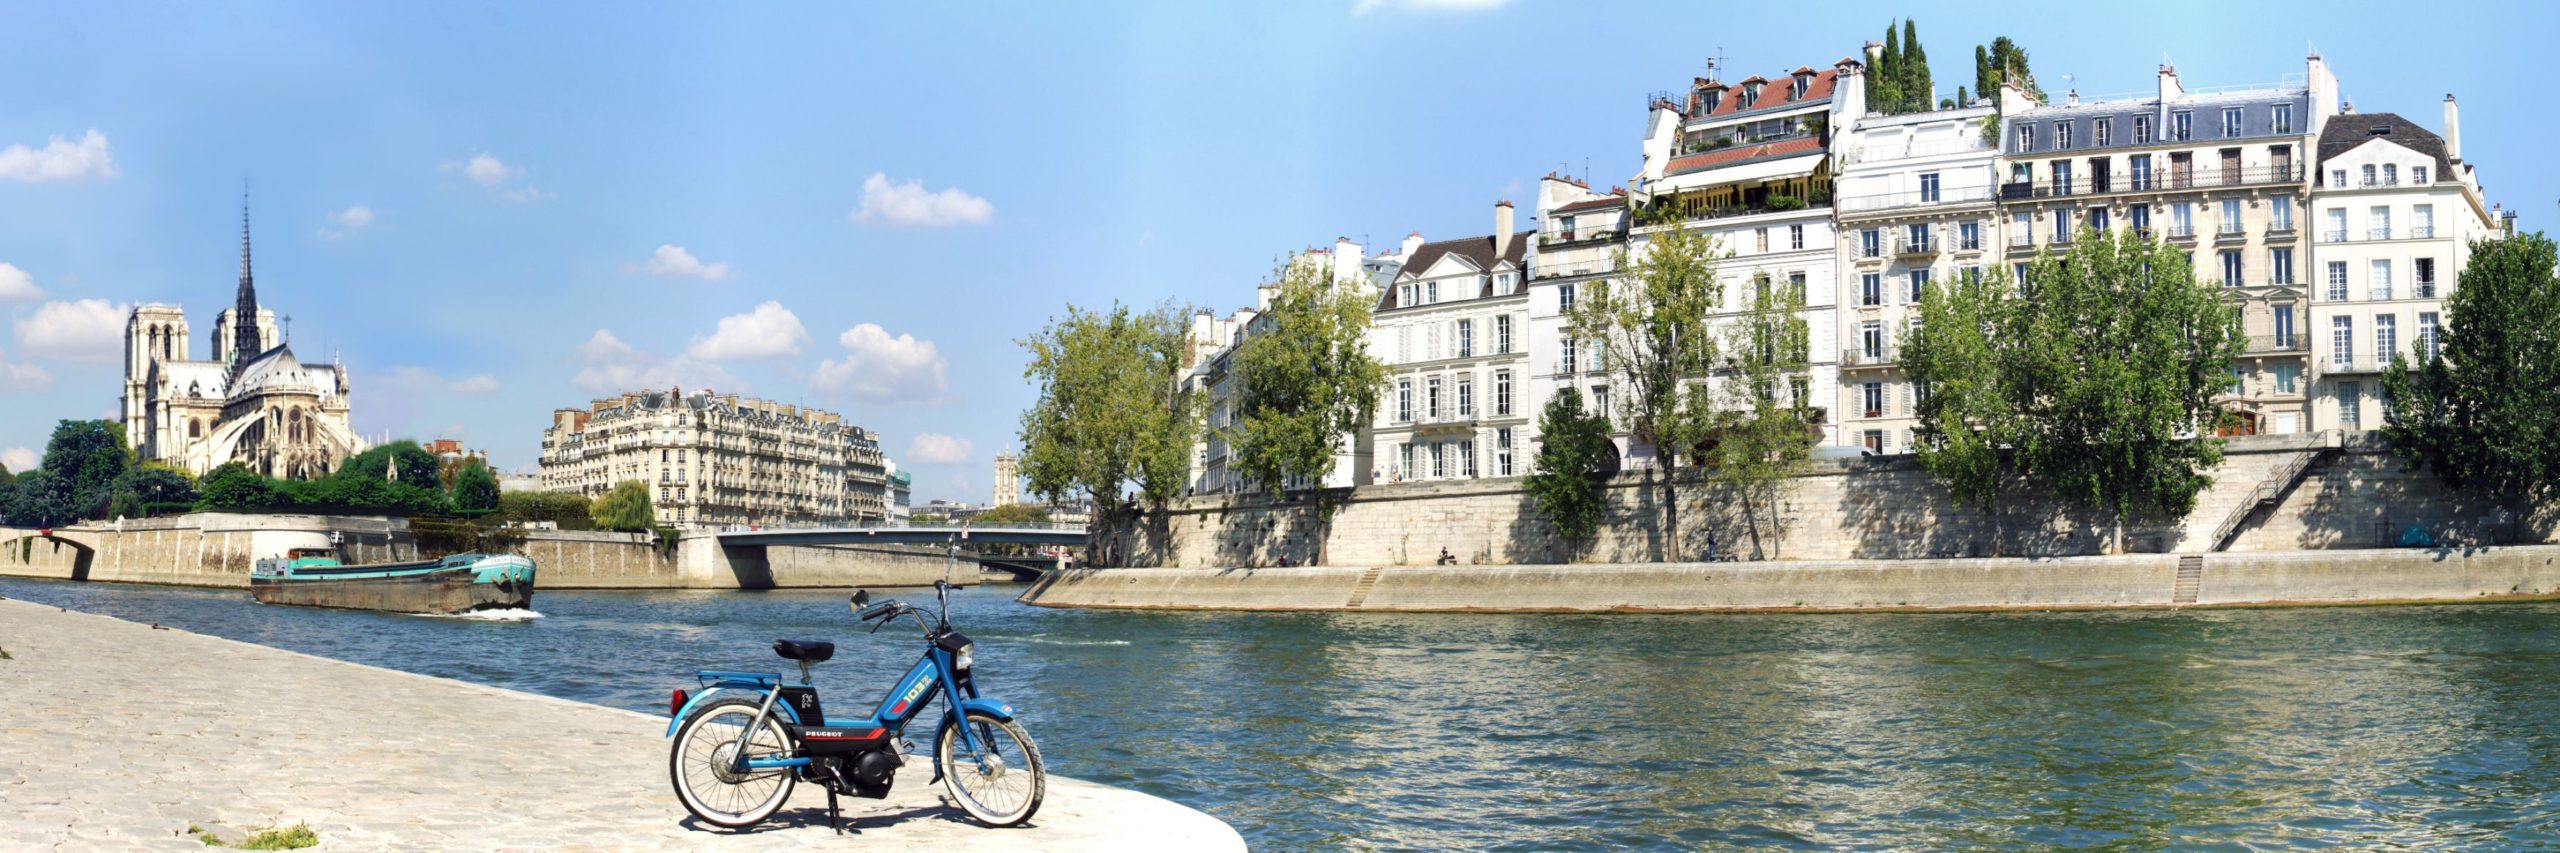 Une mobylette au bord de la Seine